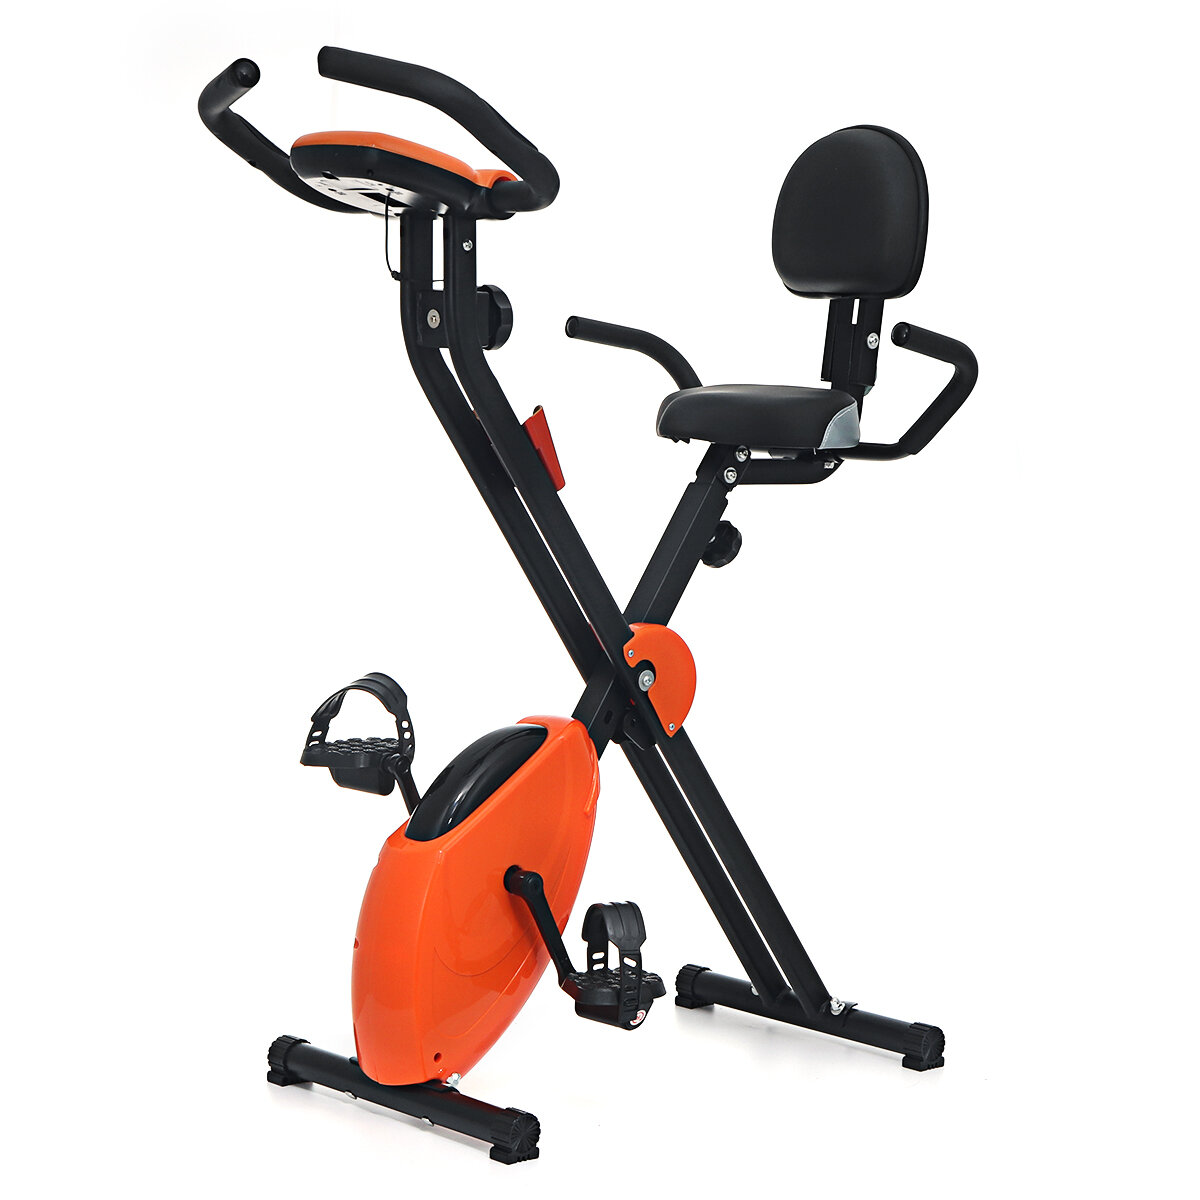 Ευρωπαϊκή αποθήκη | KALOAD Folding Exercise Bike Fitness Cardio Training Sports Cycling Spinning Bike Workout Equipment